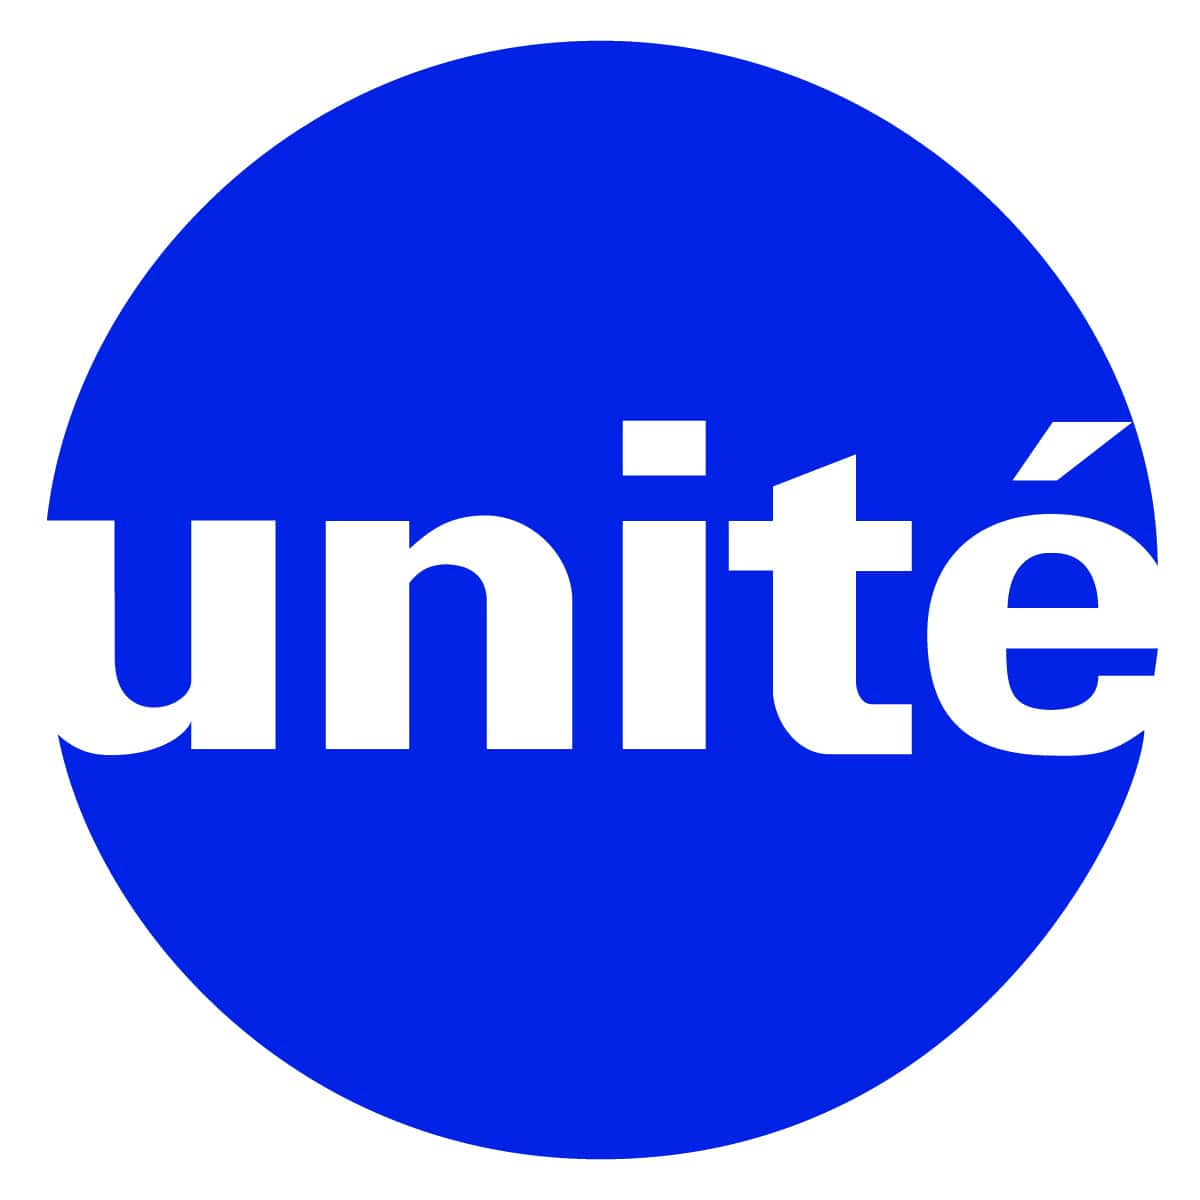 logo unité